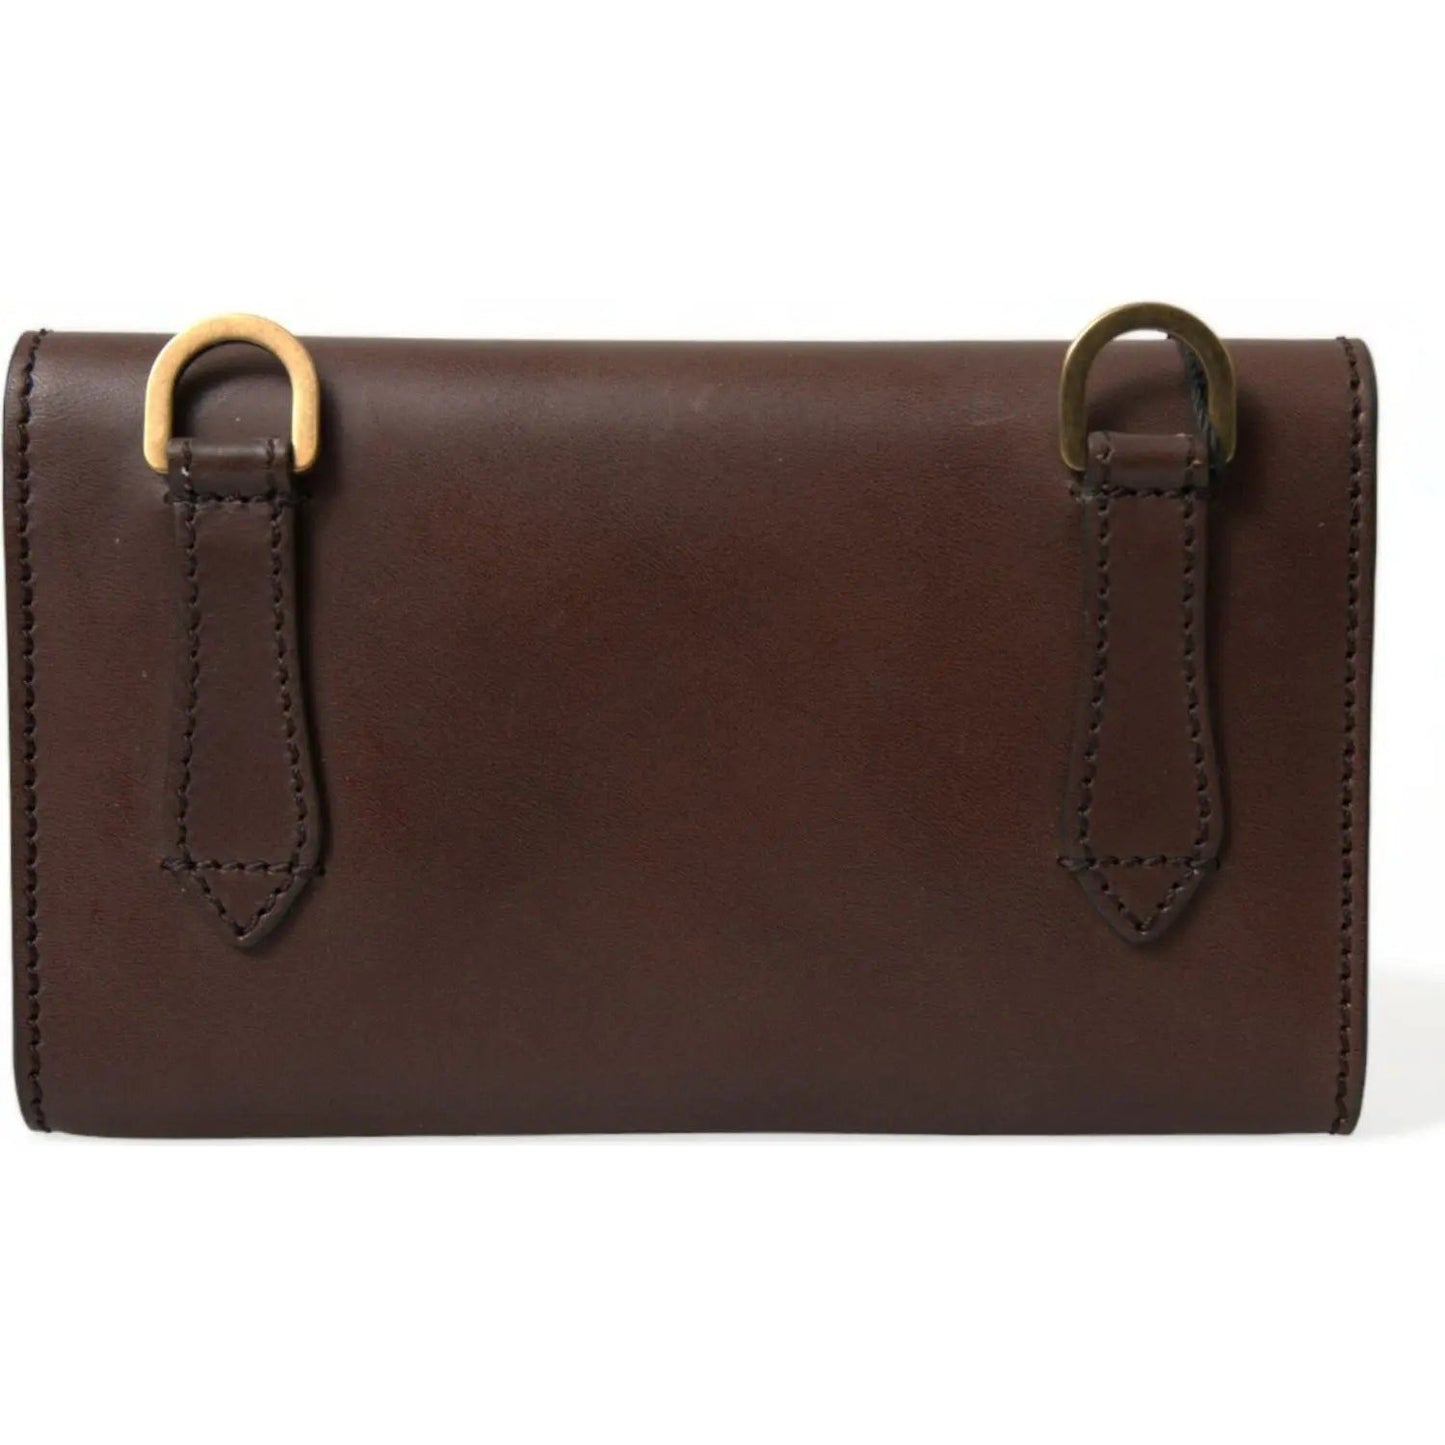 Dolce & GabbanaChic Brown Leather Shoulder Bag with Gold DetailingMcRichard Designer Brands£639.00